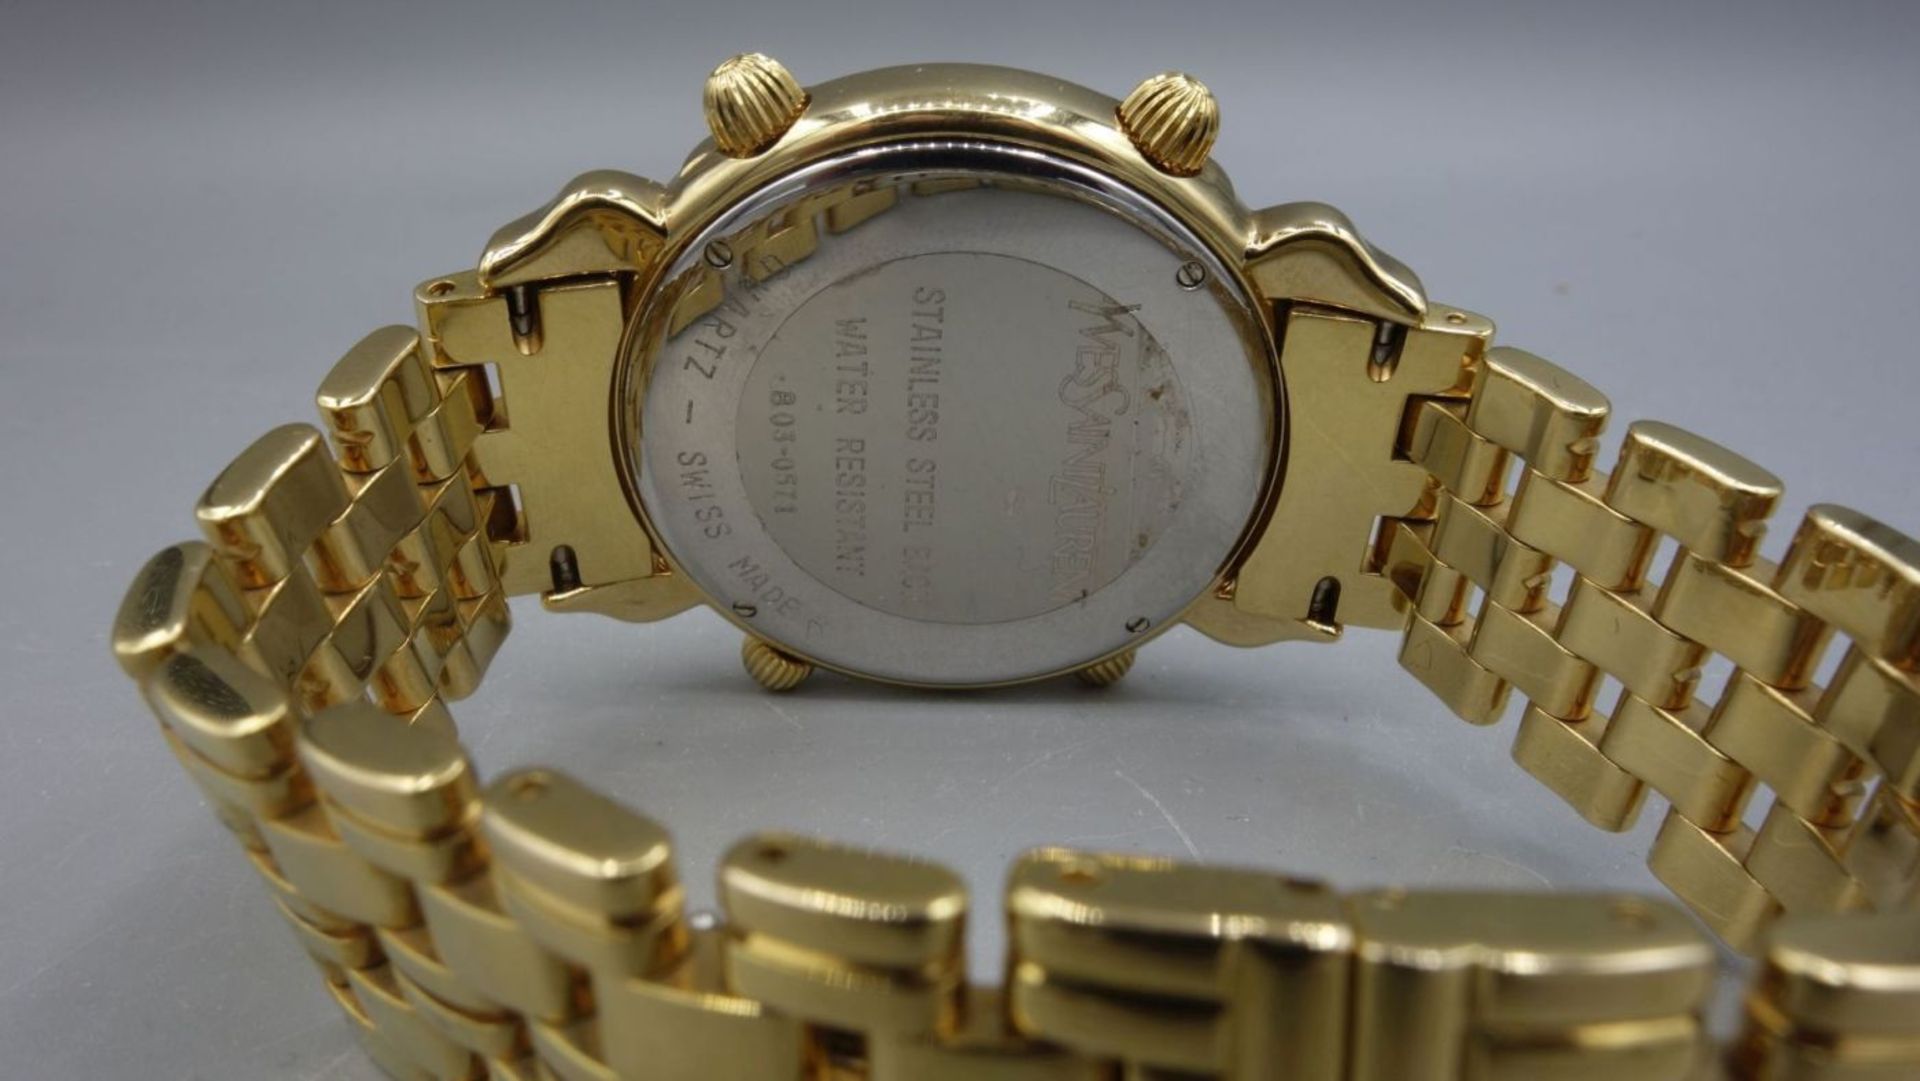 ARMBANDUHR / CHRONOGRAPH - YVES SAINT LAURENT / wristwatch, Quartz. Uhr aus der Yves Saint Laurent - Bild 6 aus 7